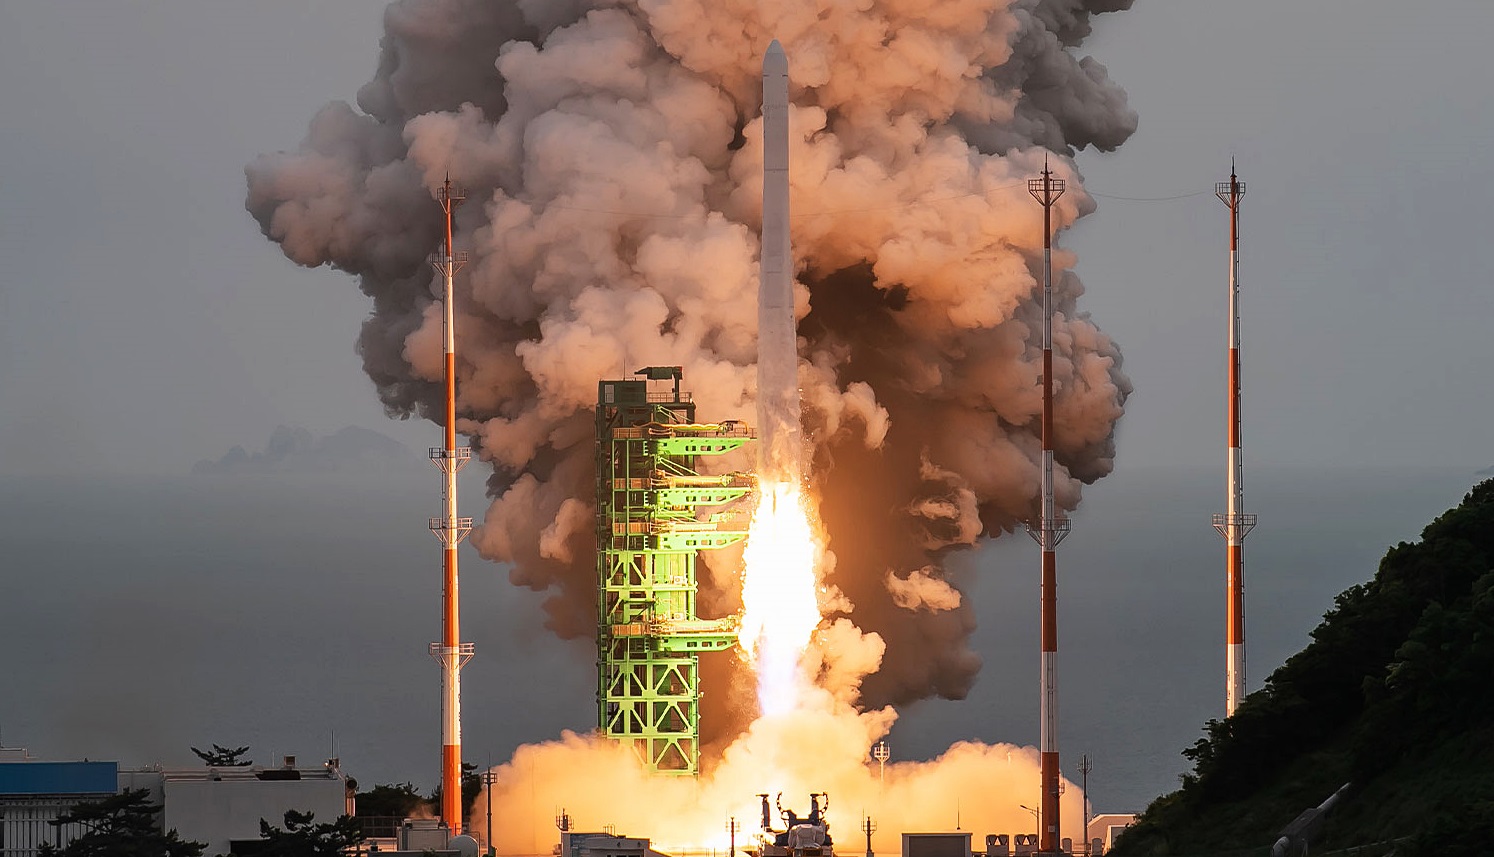 المركبة الفضائية الكورية نوري المصنعة بتقنيات محلية يتم إطلاقها من مركز نارو للفضاء الواقع بساحل غوهينغ، مقاطعة جولا الجنوبية وذلك مساء يوم 25 من الشهر الجاري. (الصورة من المعهد الكوري لأبحاث الفضاء)